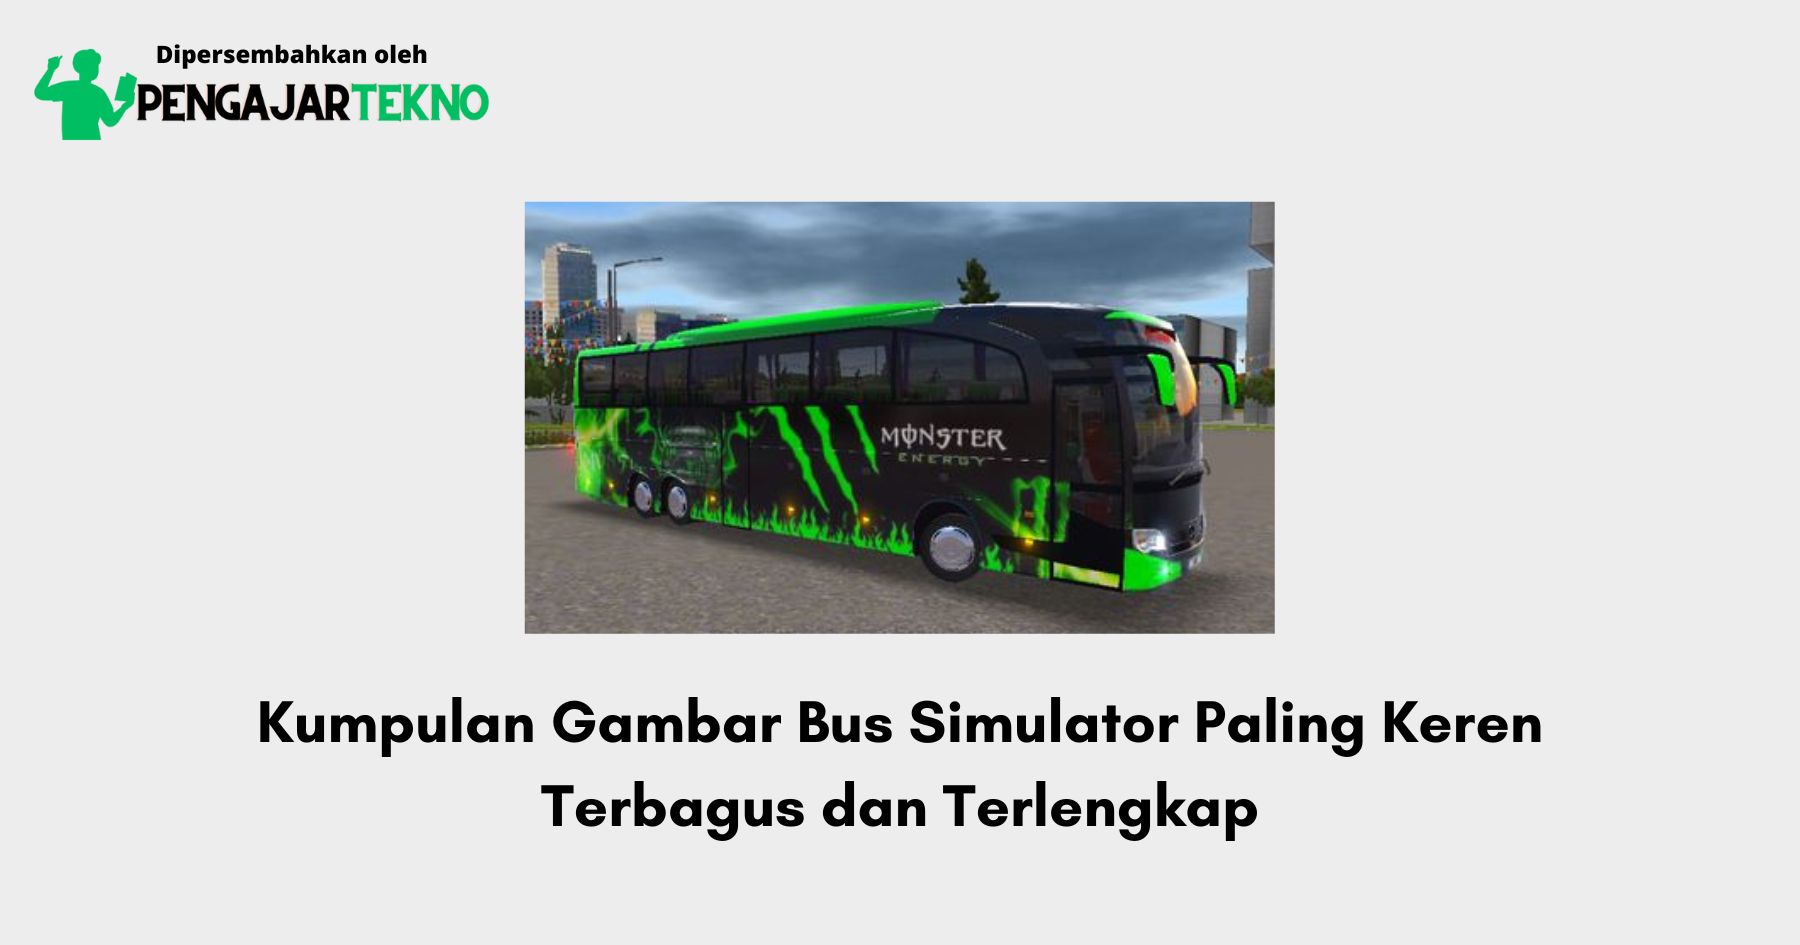 Gambar Bus Simulator